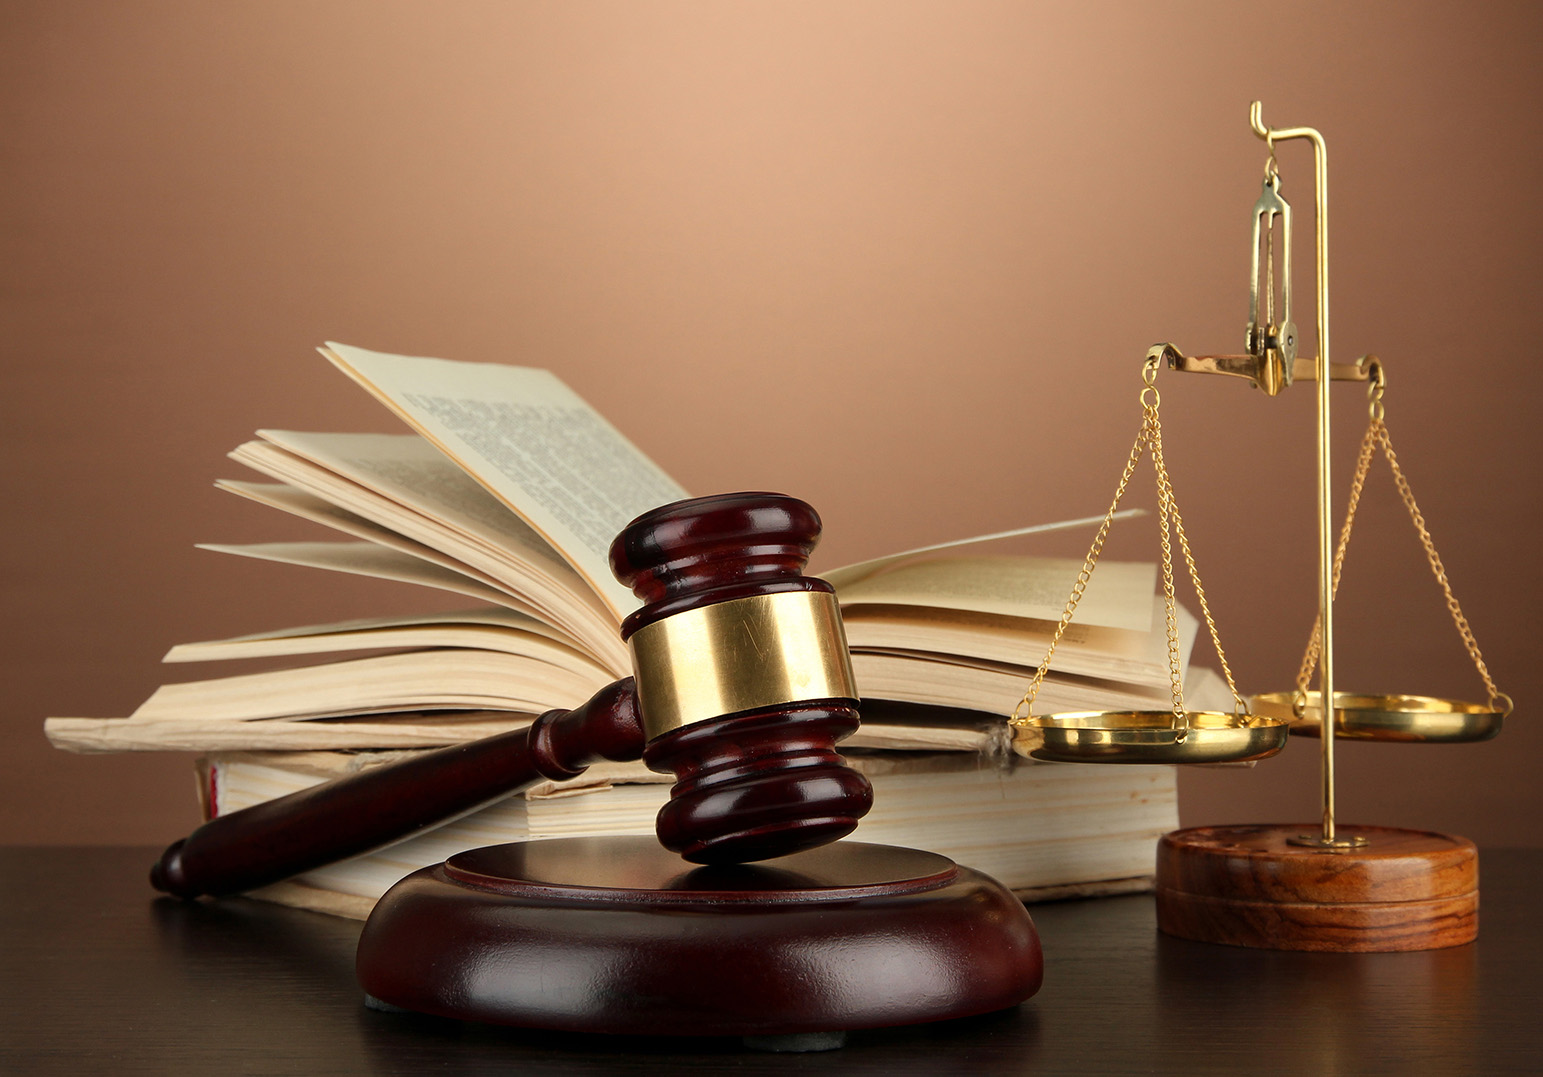 بررسی نقش و اختیارات دادستان در نظام قضایی